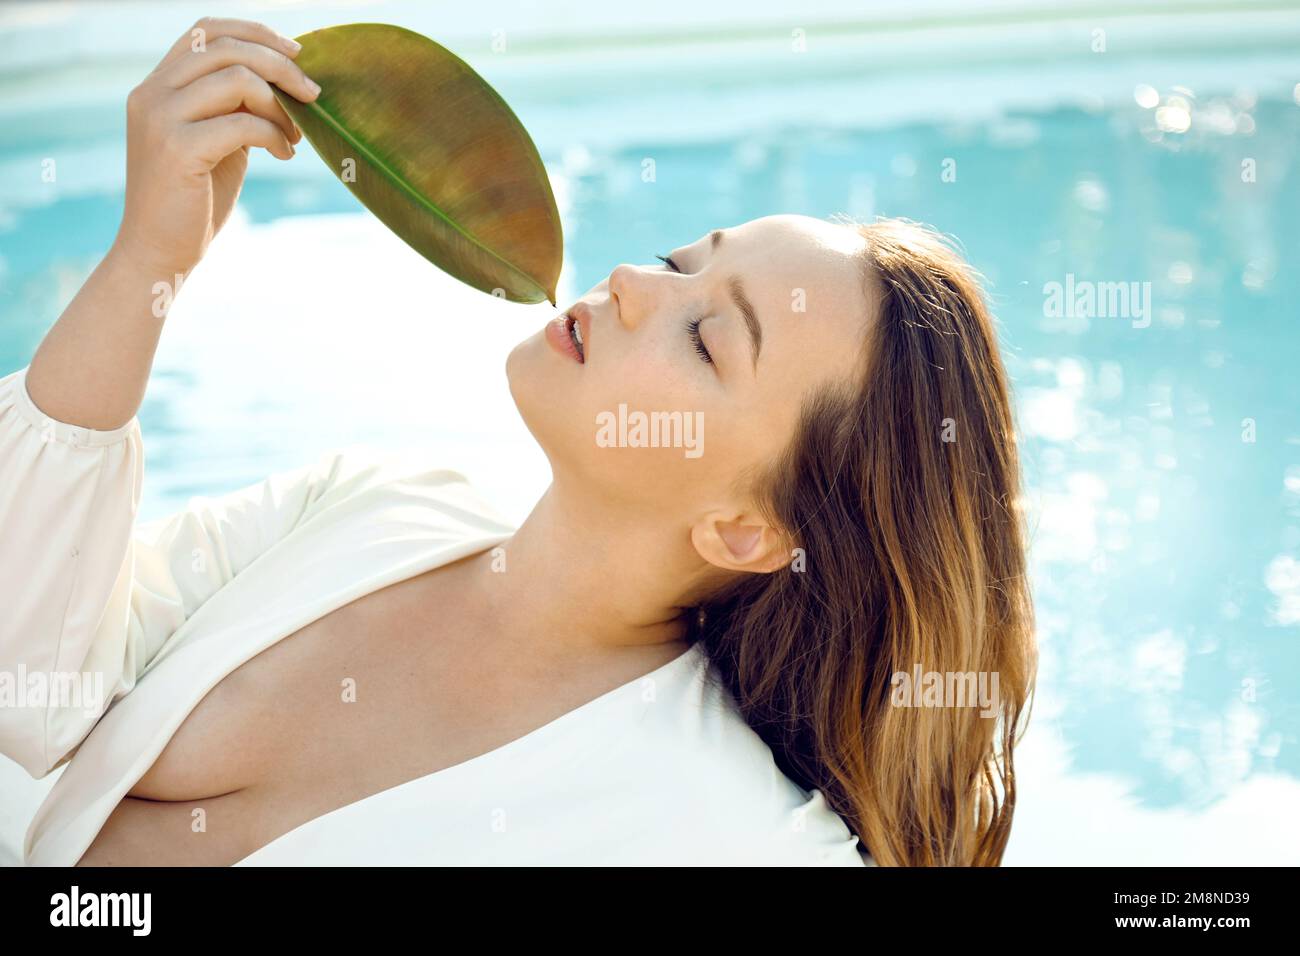 Ein modisches Mädchen in einem stilvollen weißen Badeanzug liegt draußen am Pool. Schöne Frau, die sich auf Reisen, im Spa und im Laub ausruht Stockfoto